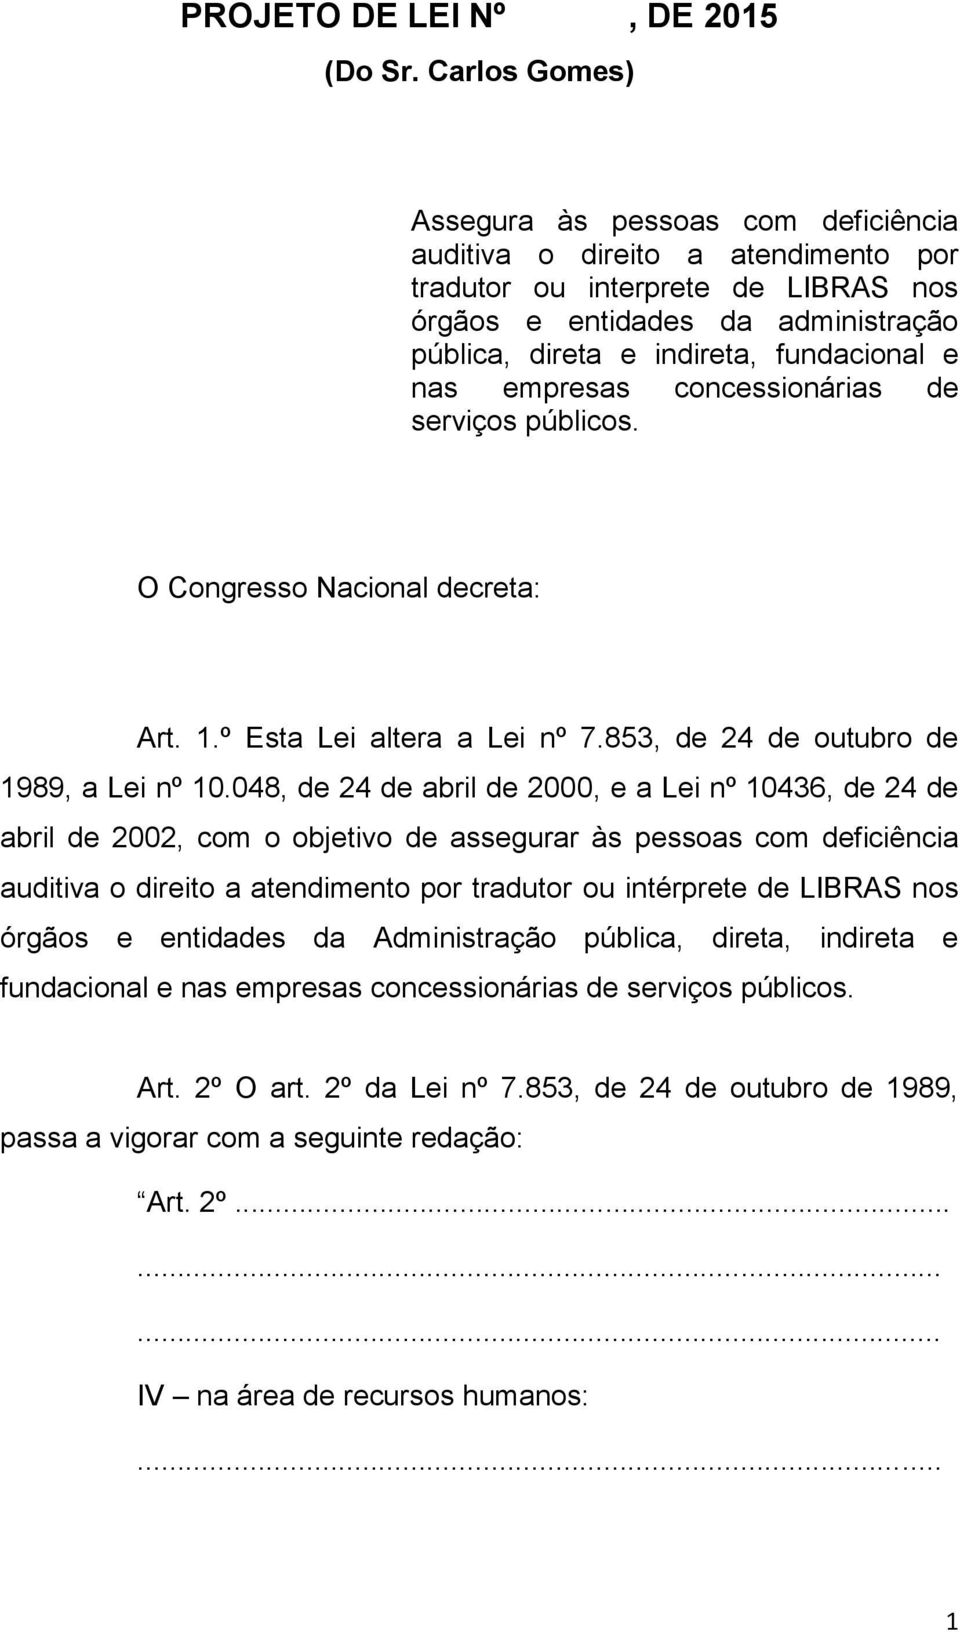 e nas empresas concessionárias de serviços públicos. O Congresso Nacional decreta: Art. 1.º Esta Lei altera a Lei nº 7.853, de 24 de outubro de 1989, a Lei nº 10.